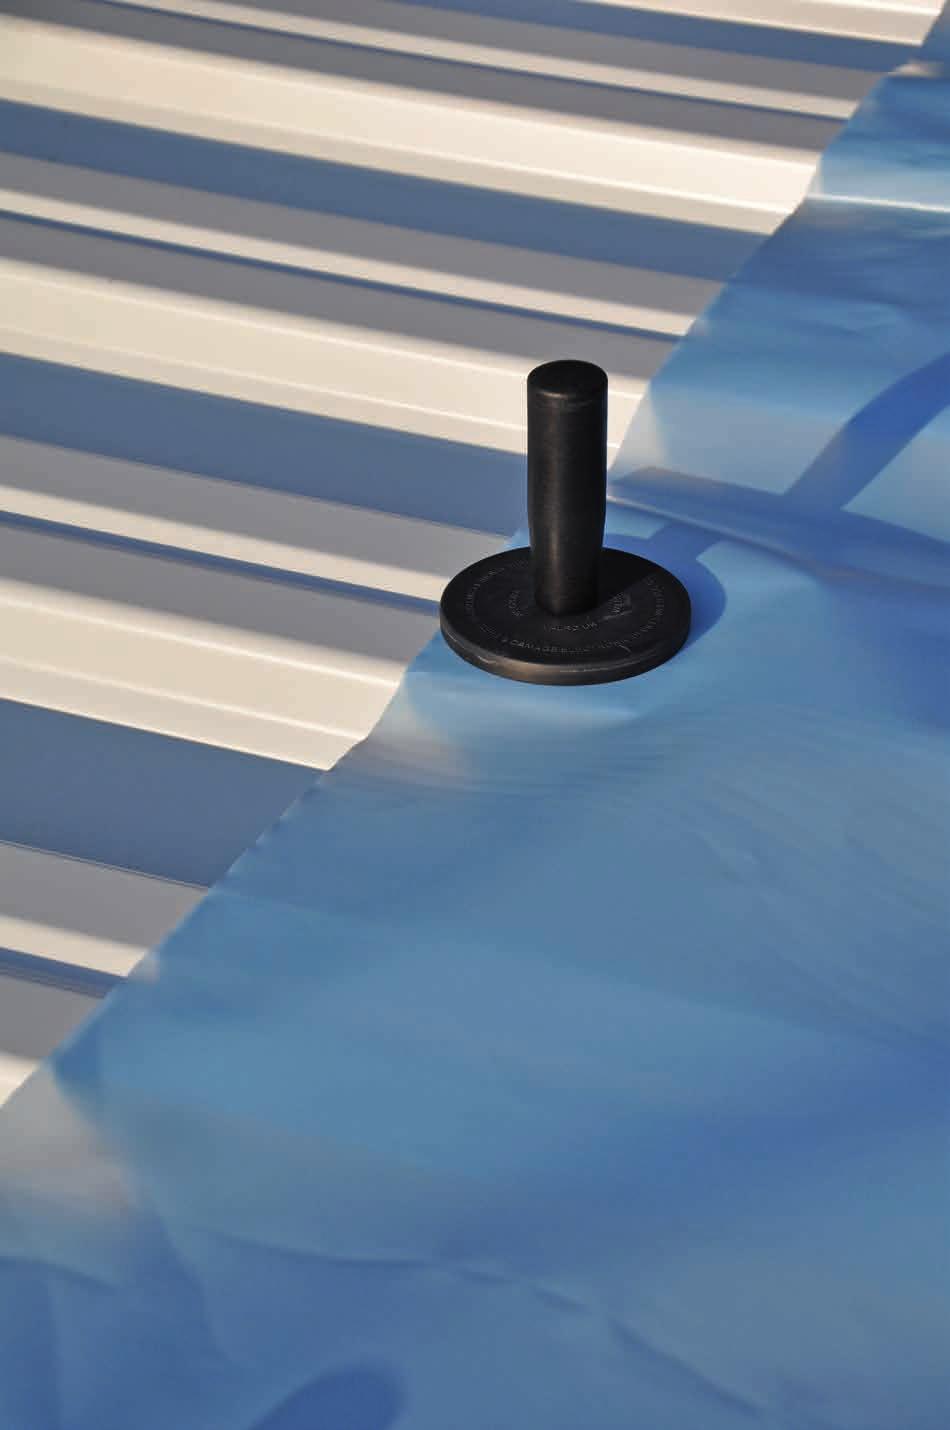 Eurofast -Magnet-Halter Universell einsetzbarer Magnet-Halter mit starker Haltekraft zum temporären Fixieren von verschiedensten Materialien auf dem Flachdach und an der Fassade.